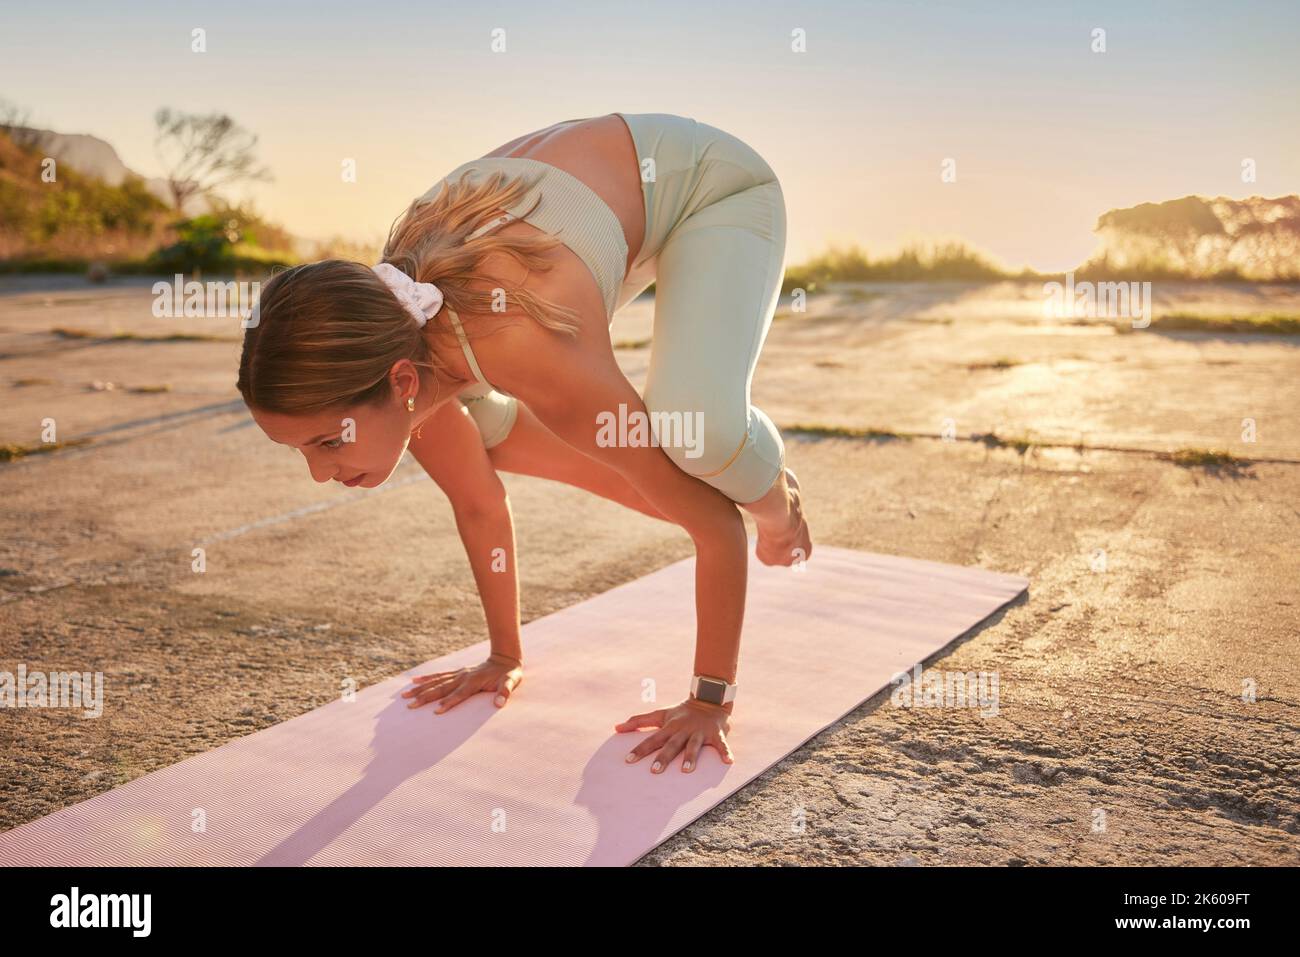 Yoga-Frau in voller Länge in Krähenhaltung in der Praxis im Freien in der entlegenen Natur. Schöne kaukasische Person mit Matte, balanciert auf den Händen, während Stockfoto